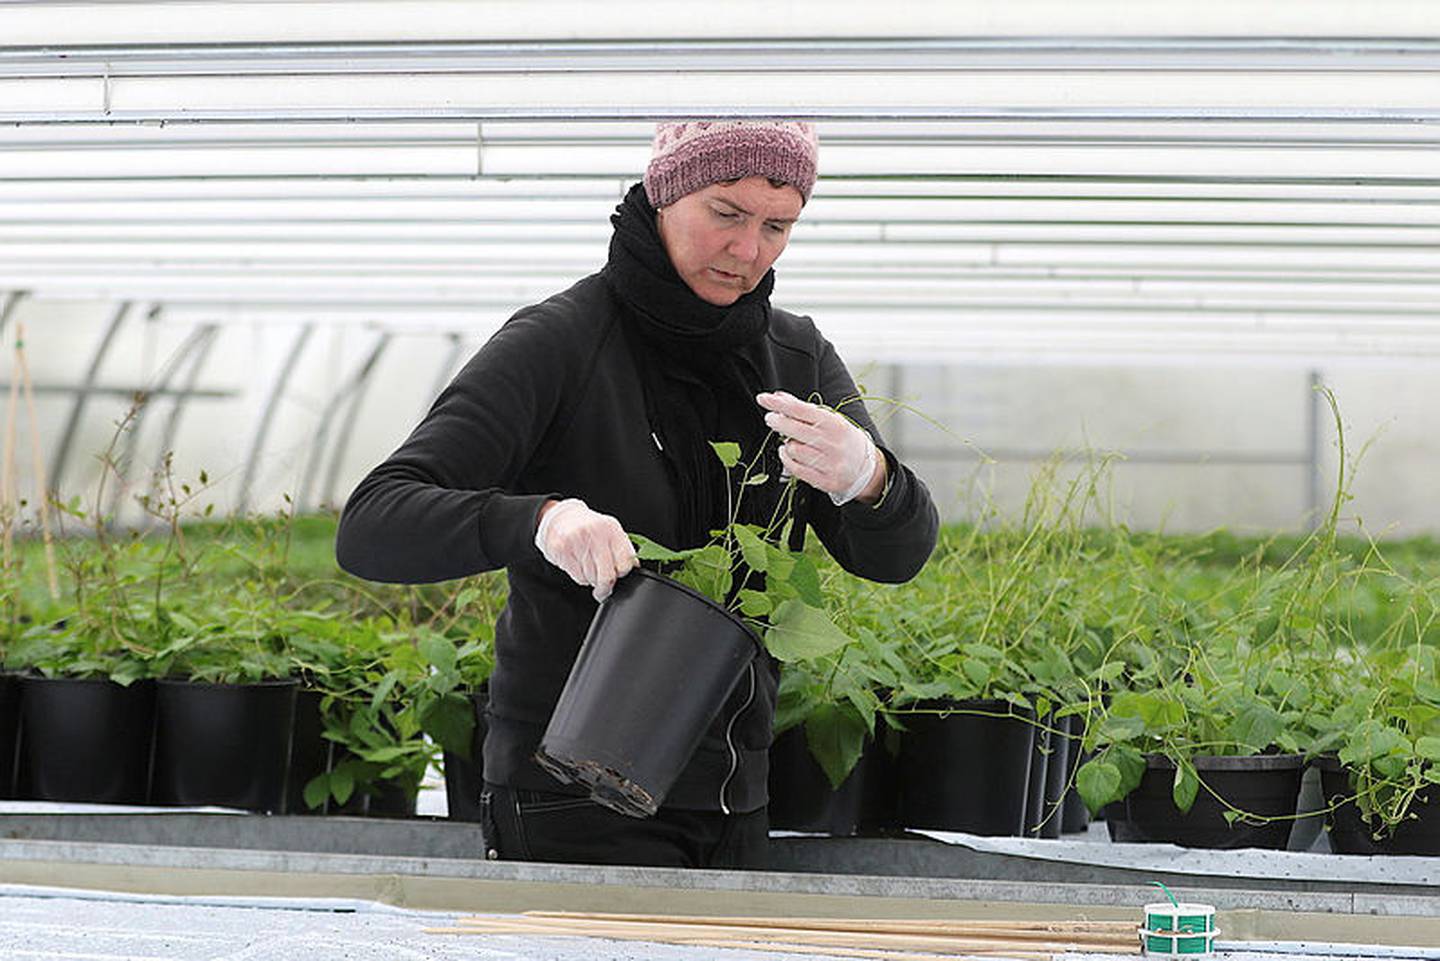 I sesongen satser Anne Marie på egenproduksjon av sommerblomster. Med skyhøye strømpriser håper hun naturlig sollys i all hovedsak kan bidra til veksten i drivhusene.